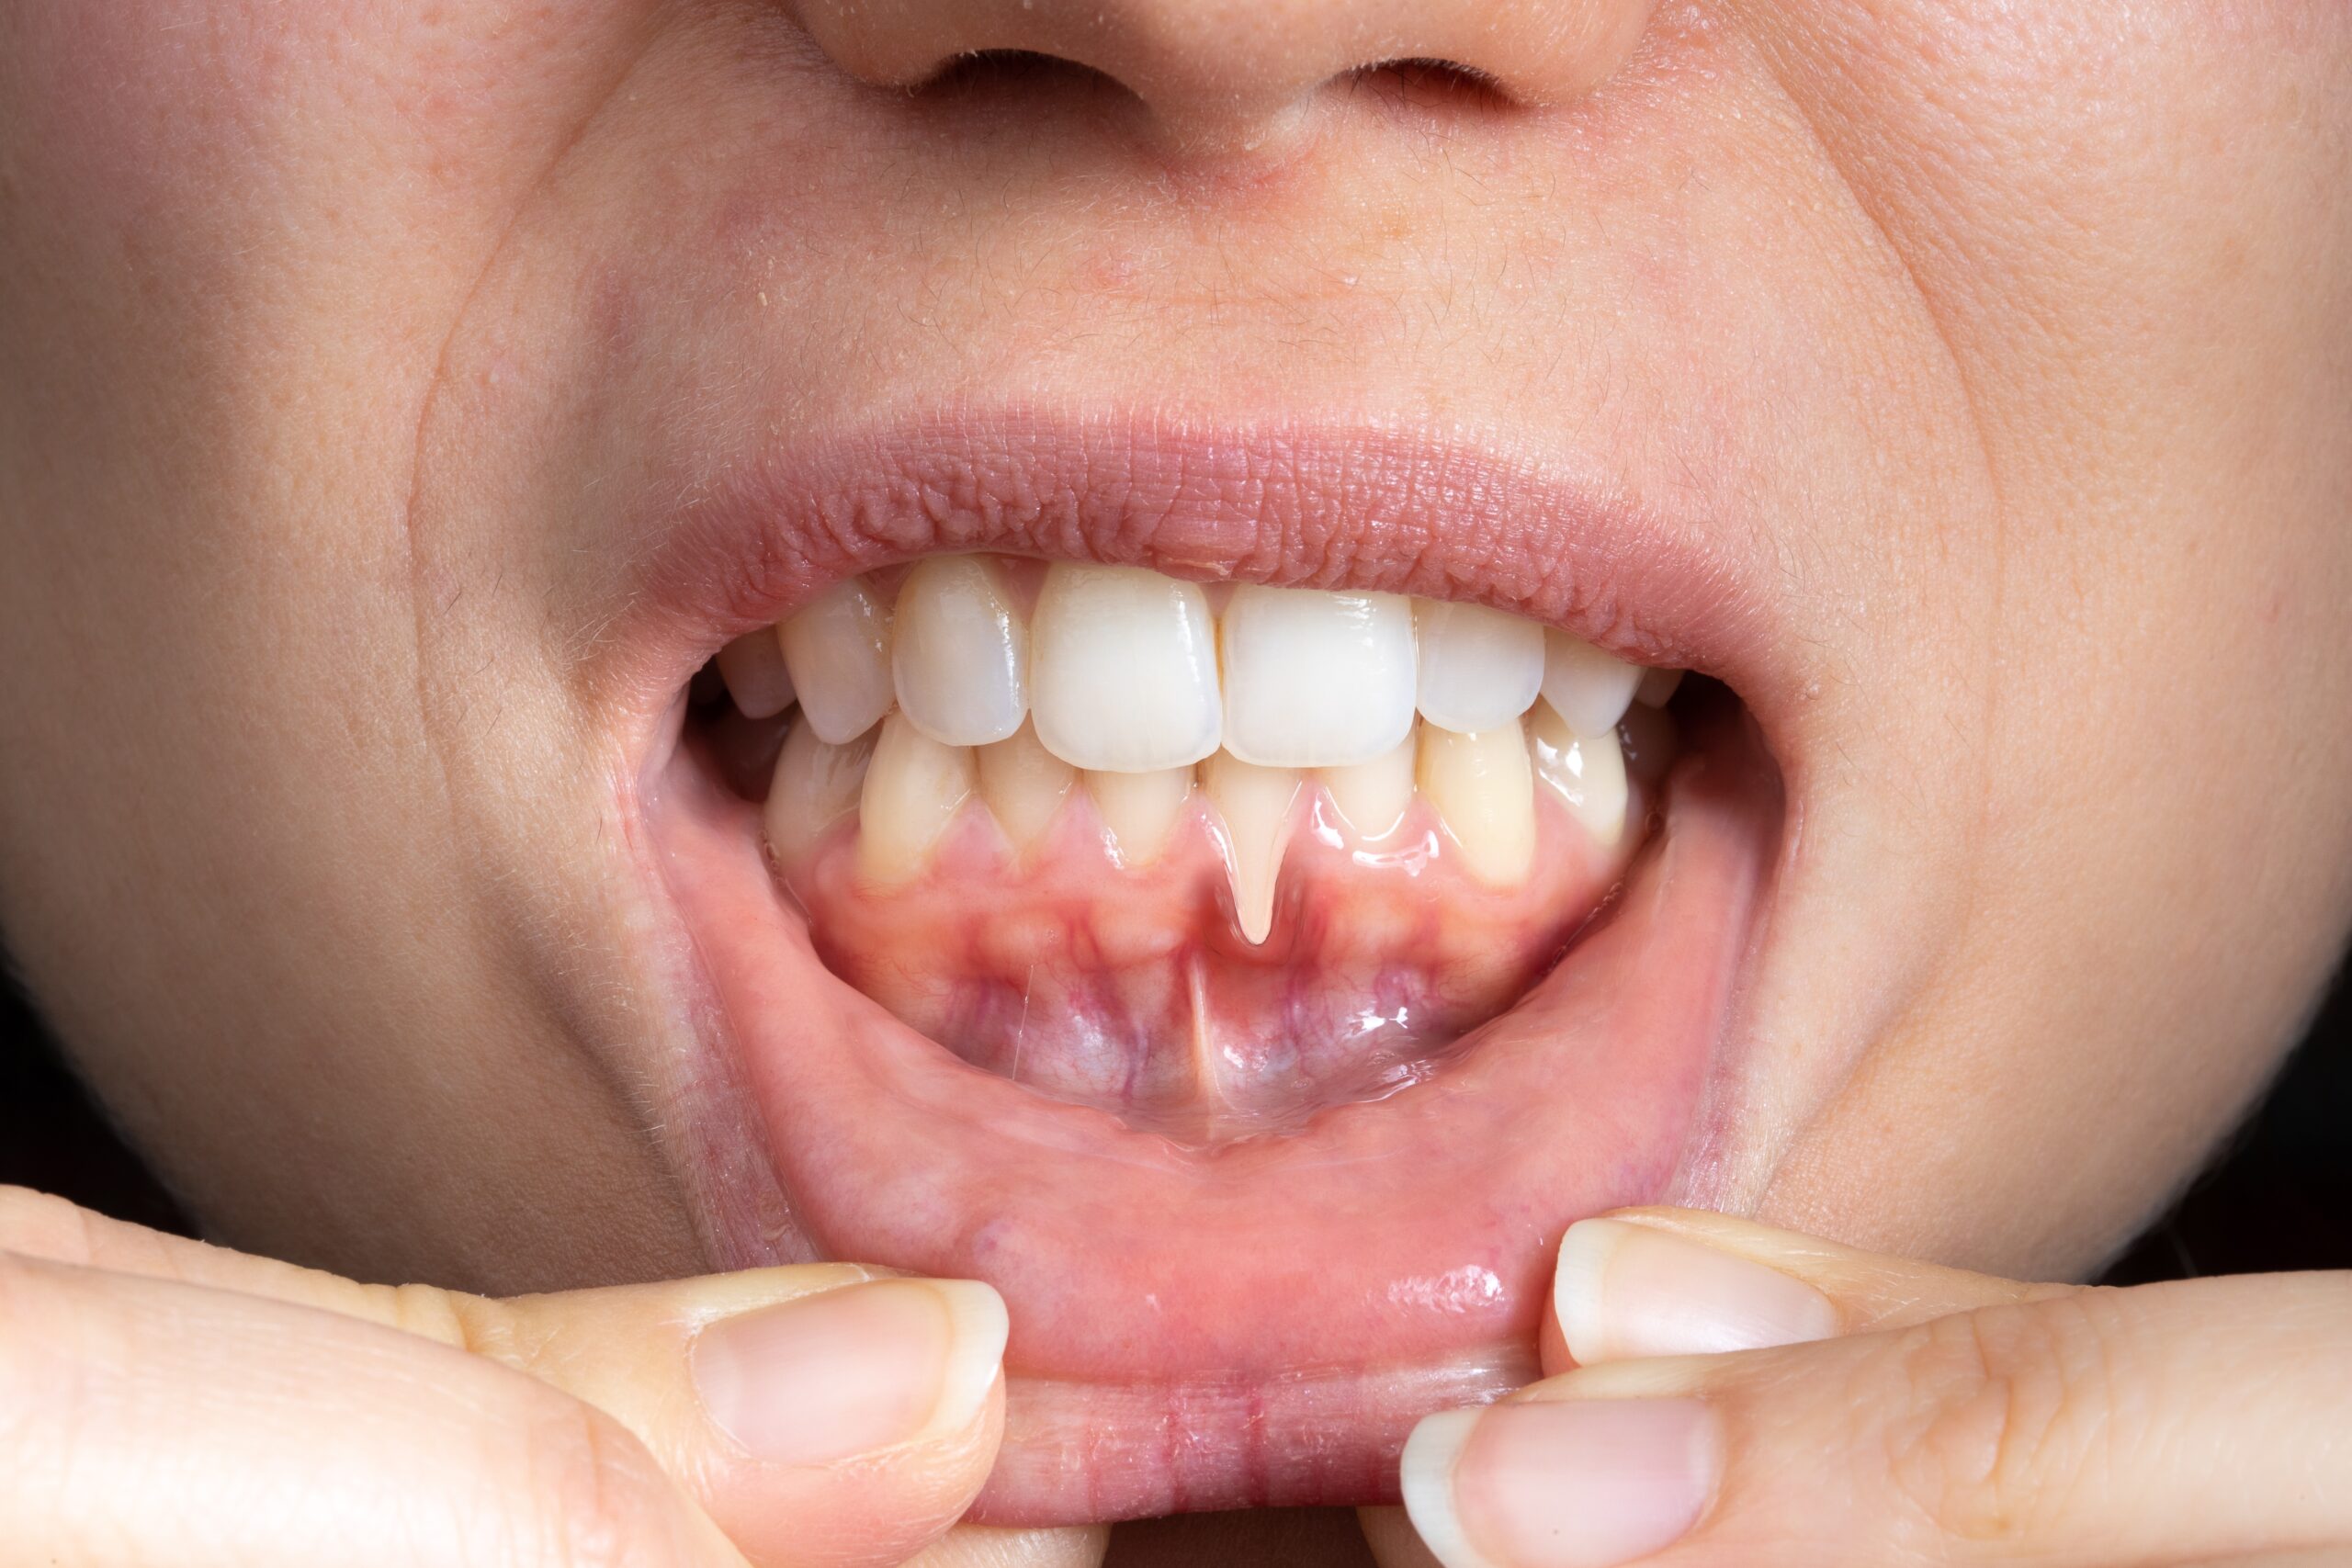 How to fix receding gums